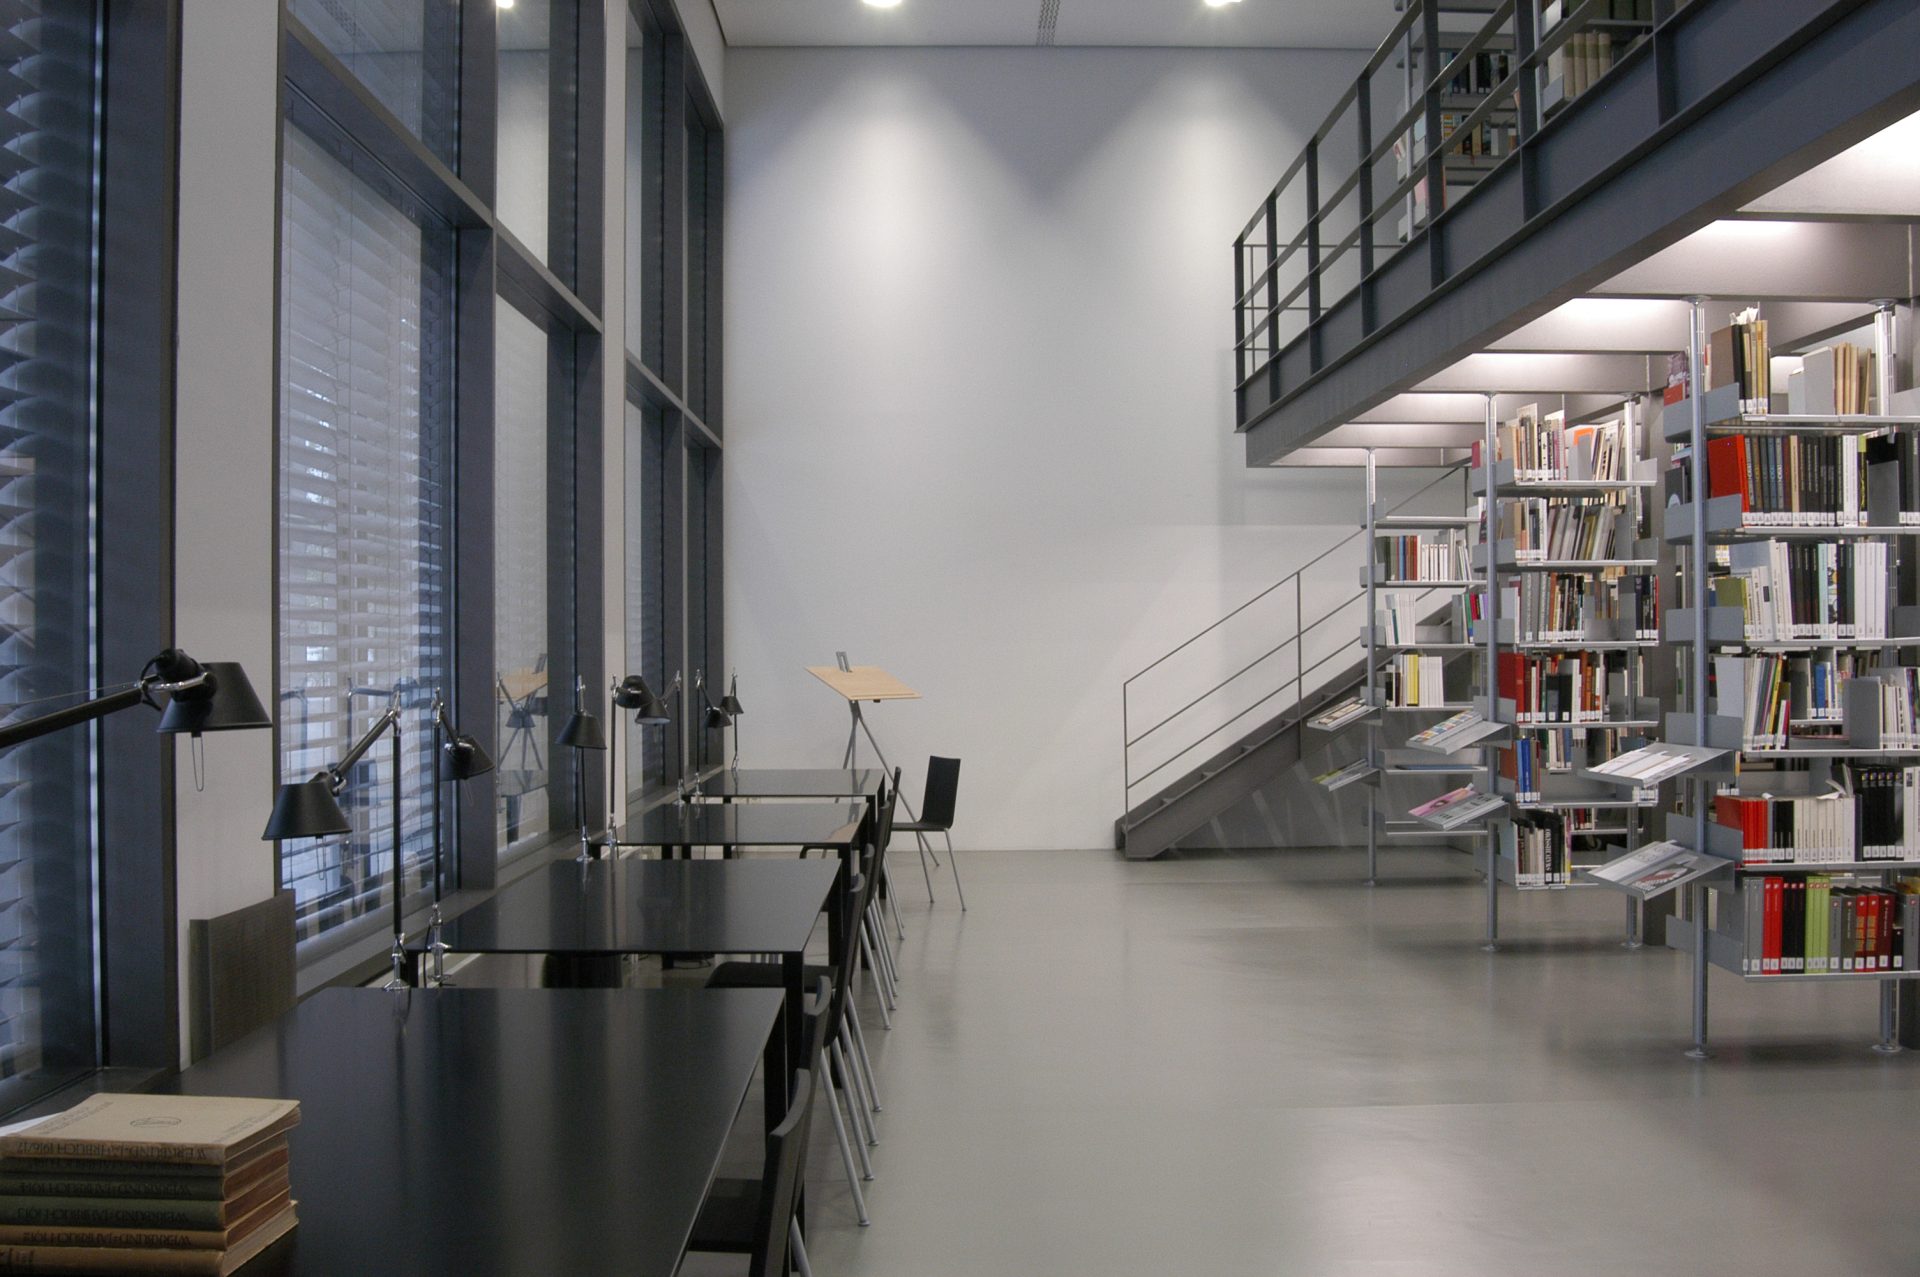 Zu sehen ist ein Blick in die helle Bibliothek. Der Boden ist grau, die Wände sind weiß. Links sind an einer großen Fensterfront schwarze Tische und Stühle. Rechts sind offene, weiße Regale. Man blickt auf eine Treppe, die auf die Empore links führt. 